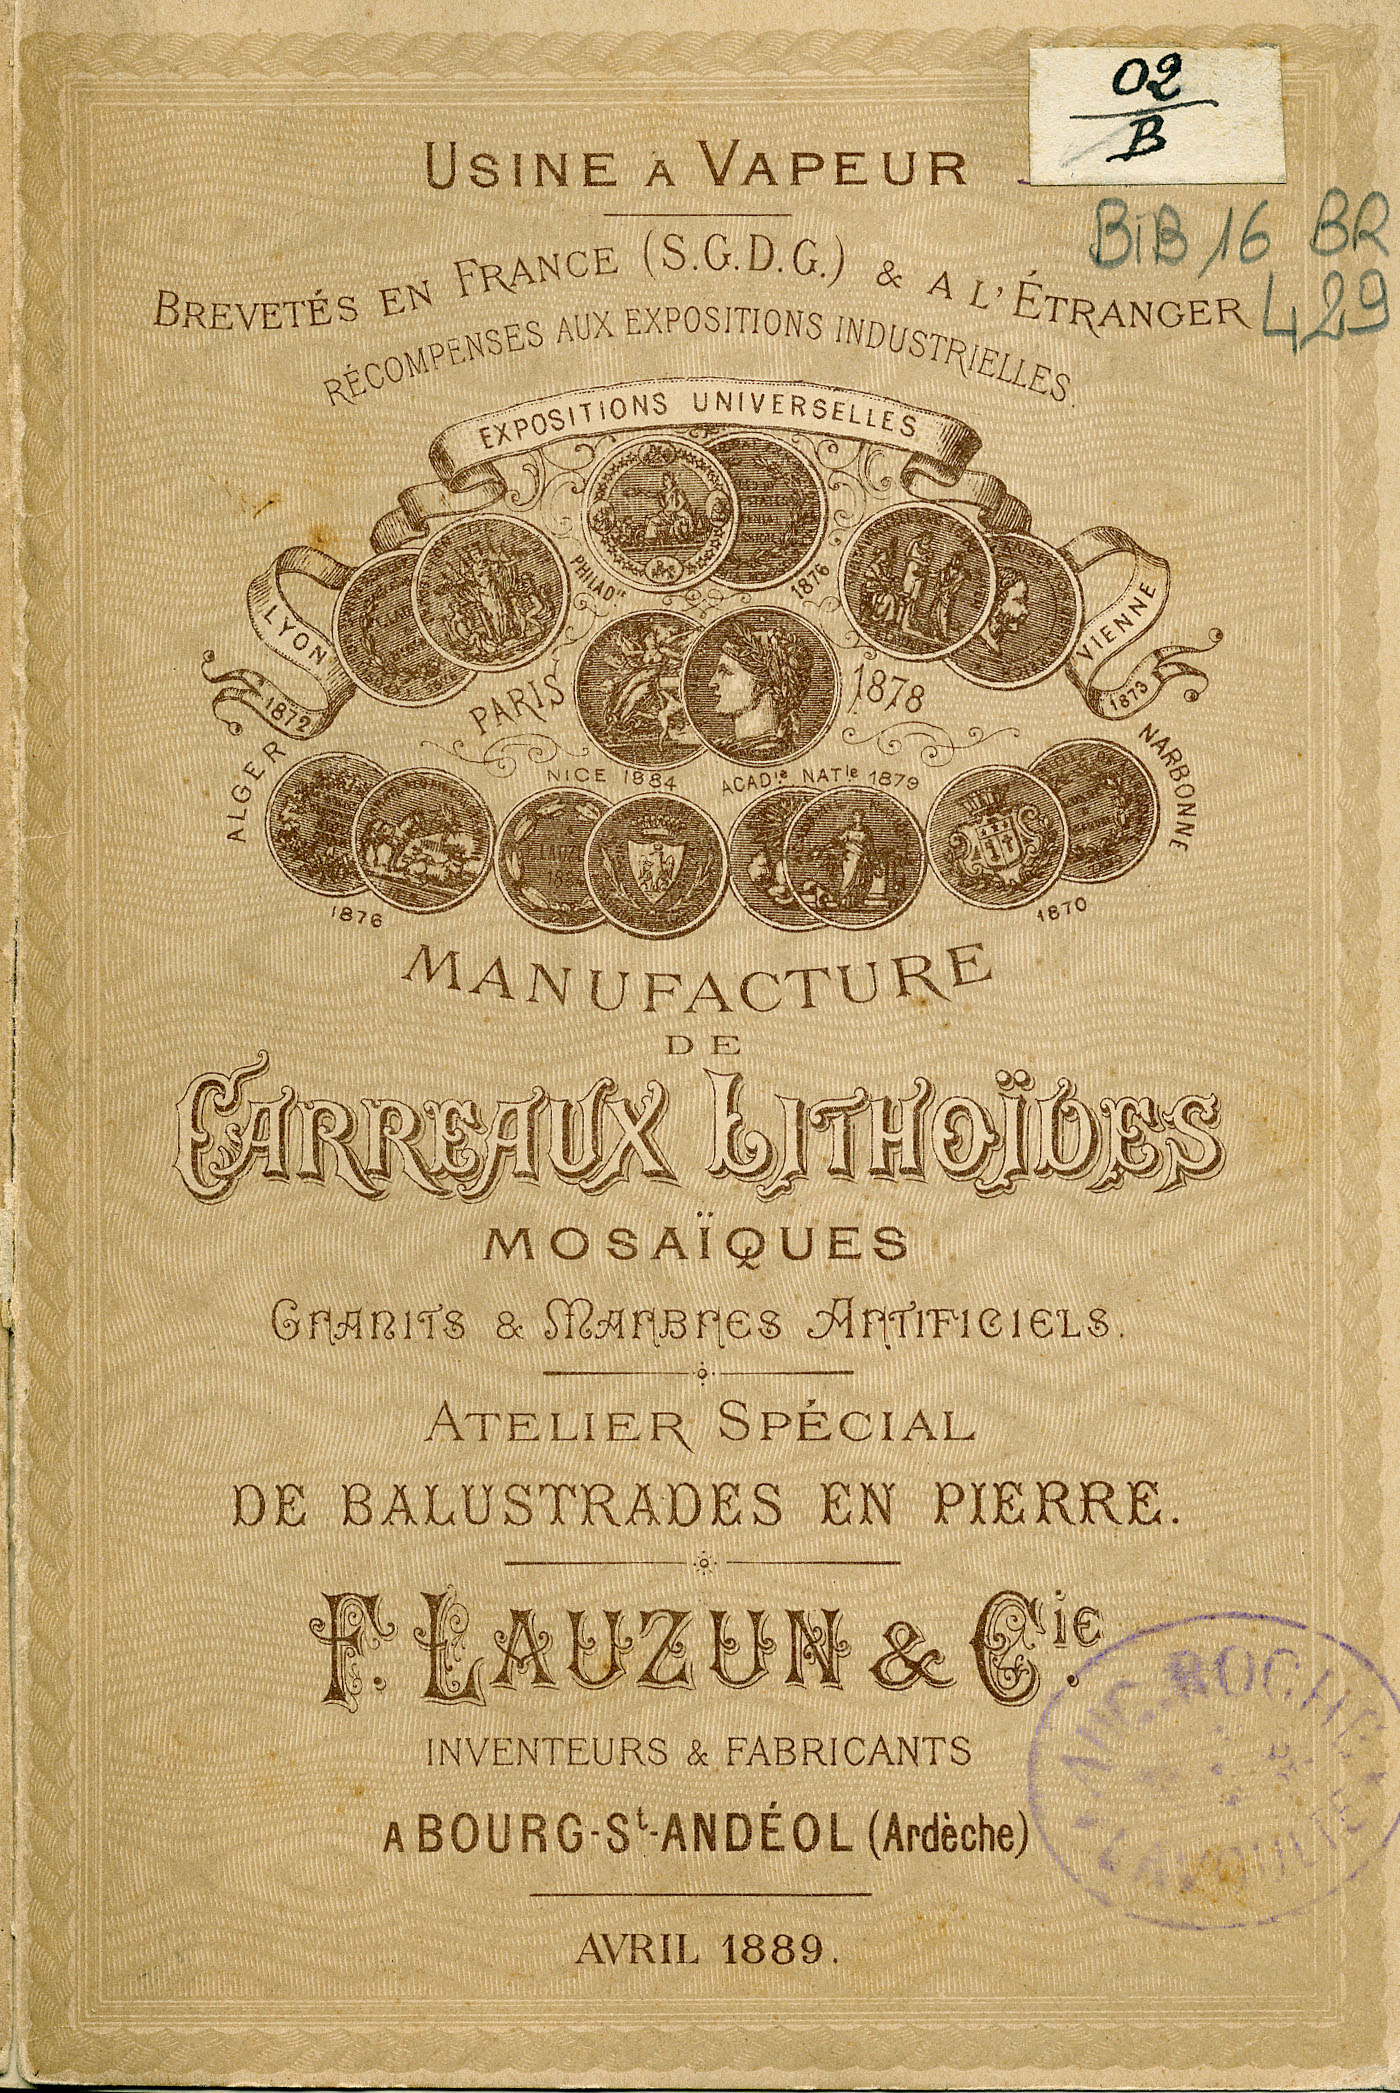 Brochure publicitaire, F. Lauzun et Cie, Bourg-Saint-Andéol, 1889. BIB-16 BR 429.